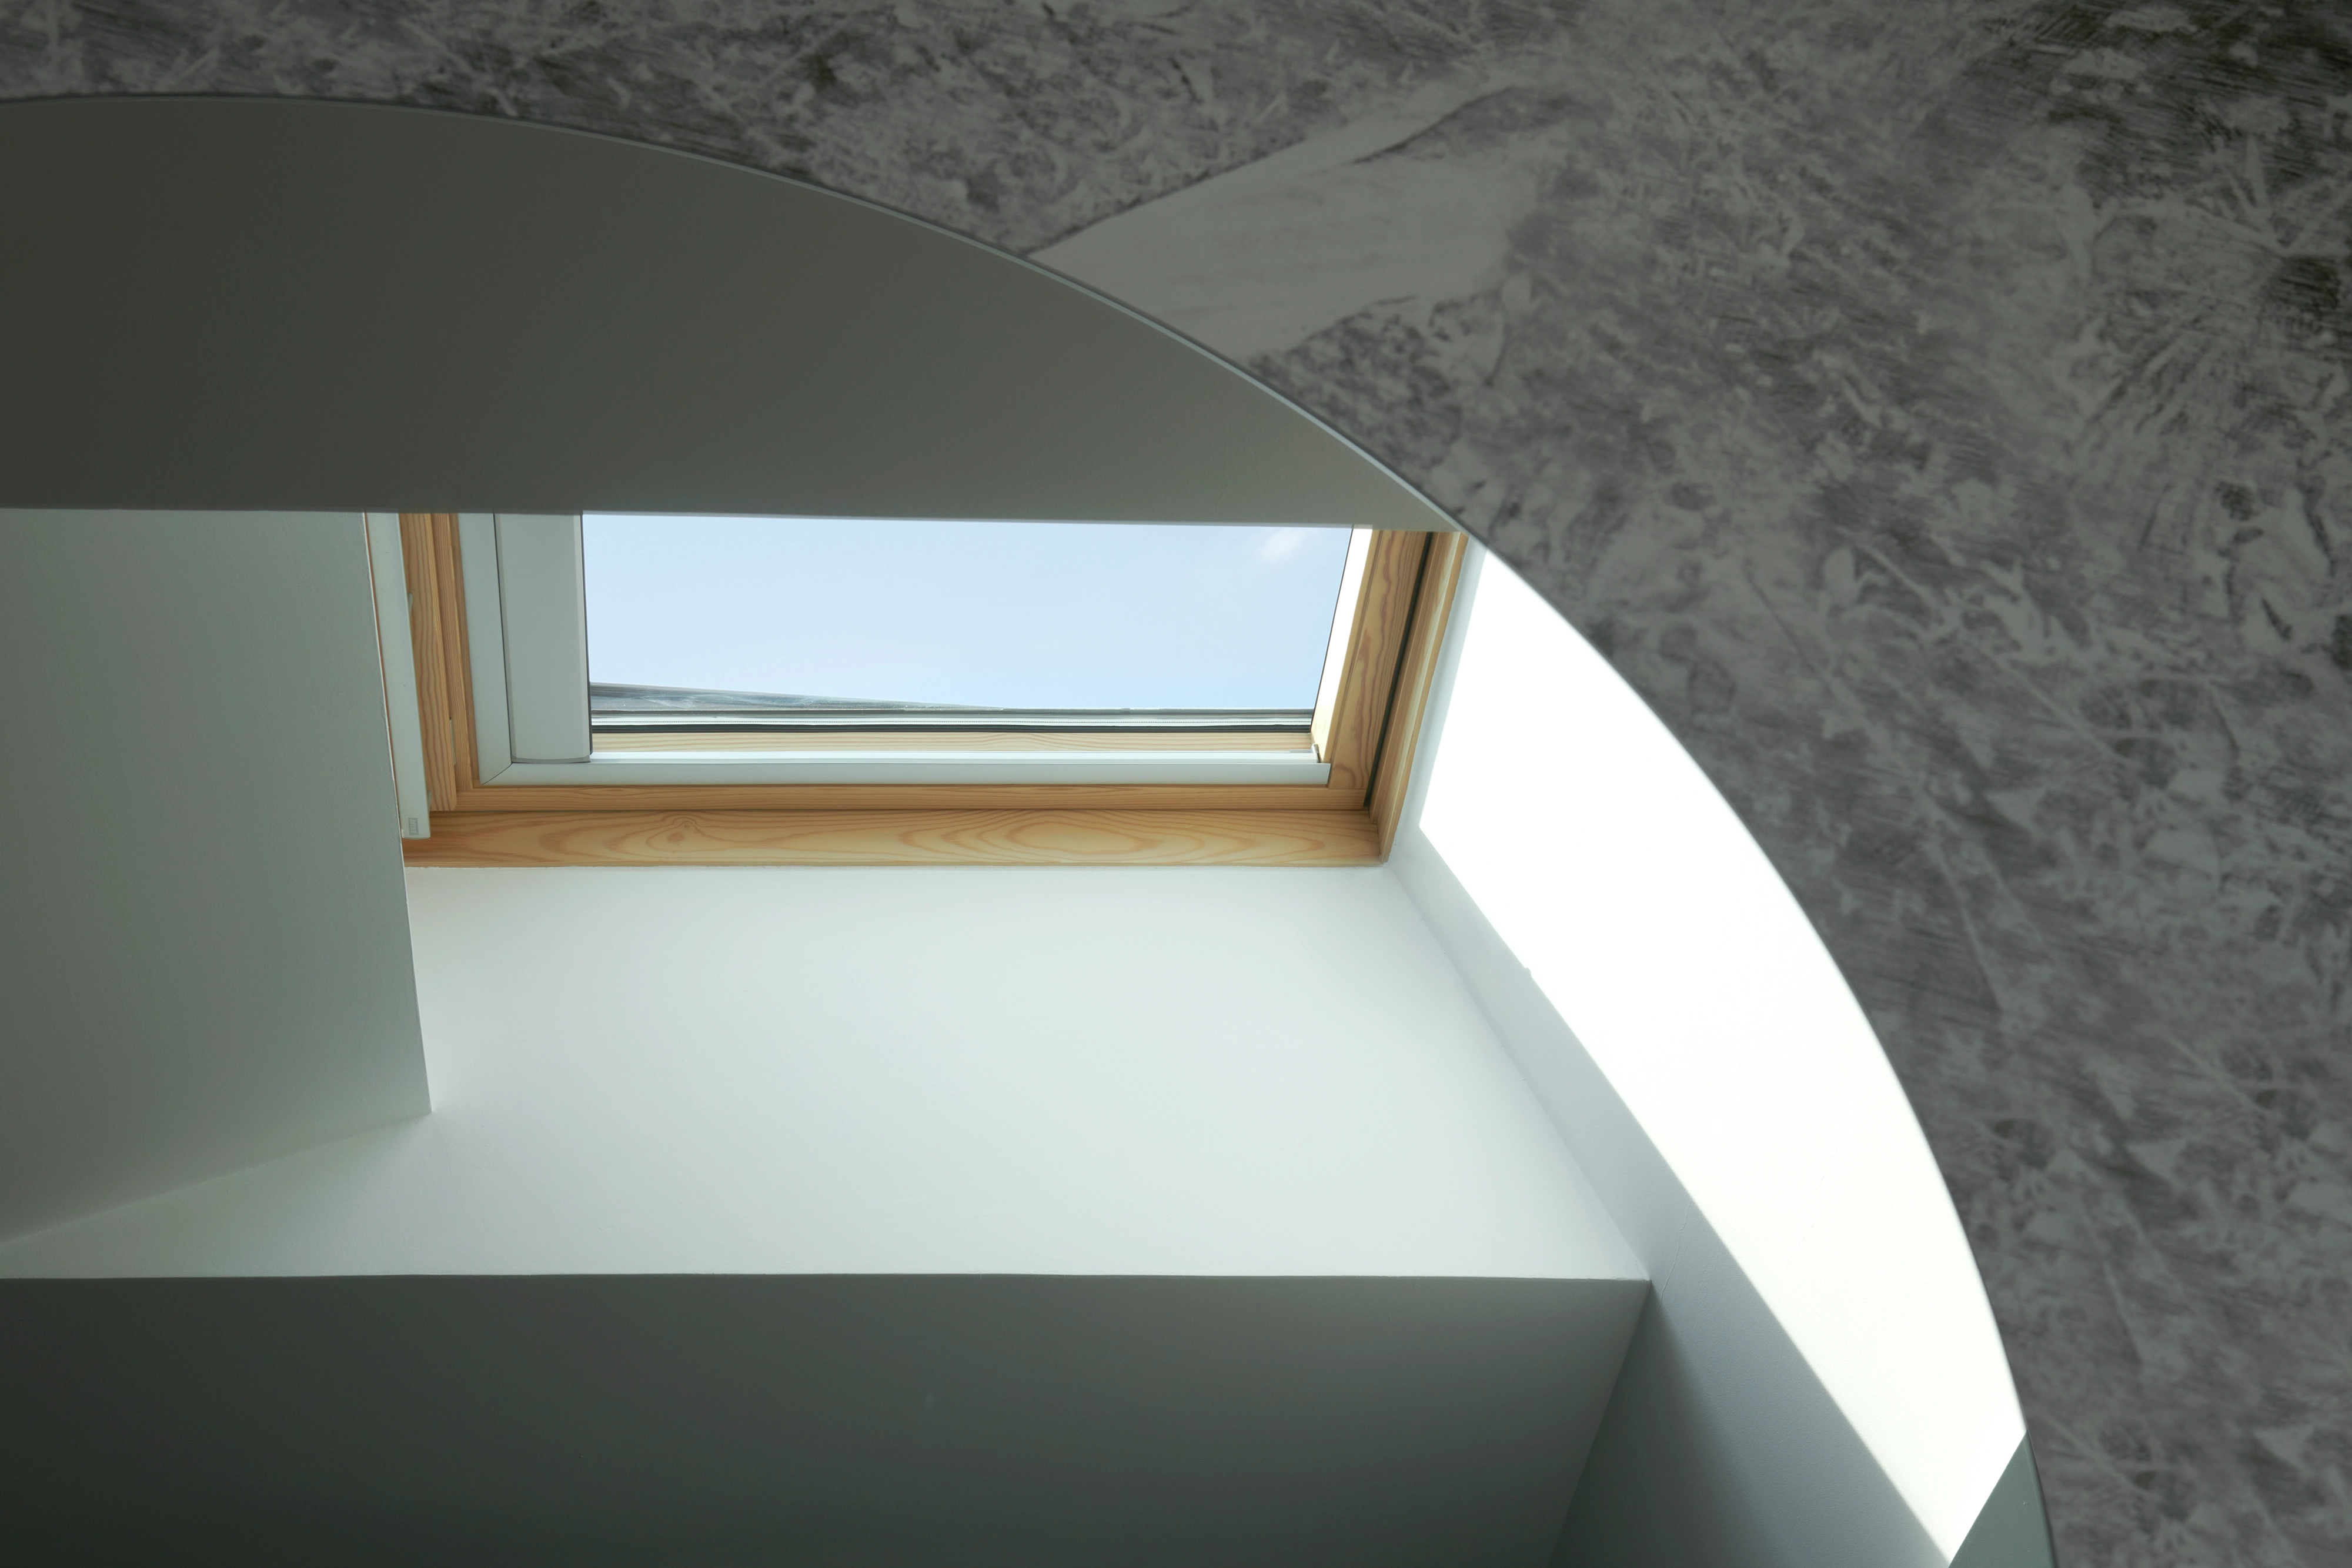 Vue minimaliste d'une fenêtre de toit dans un plafond incliné avec un cadre en bois, éclairant un mur aux textures contrastées dans une pièce épurée.